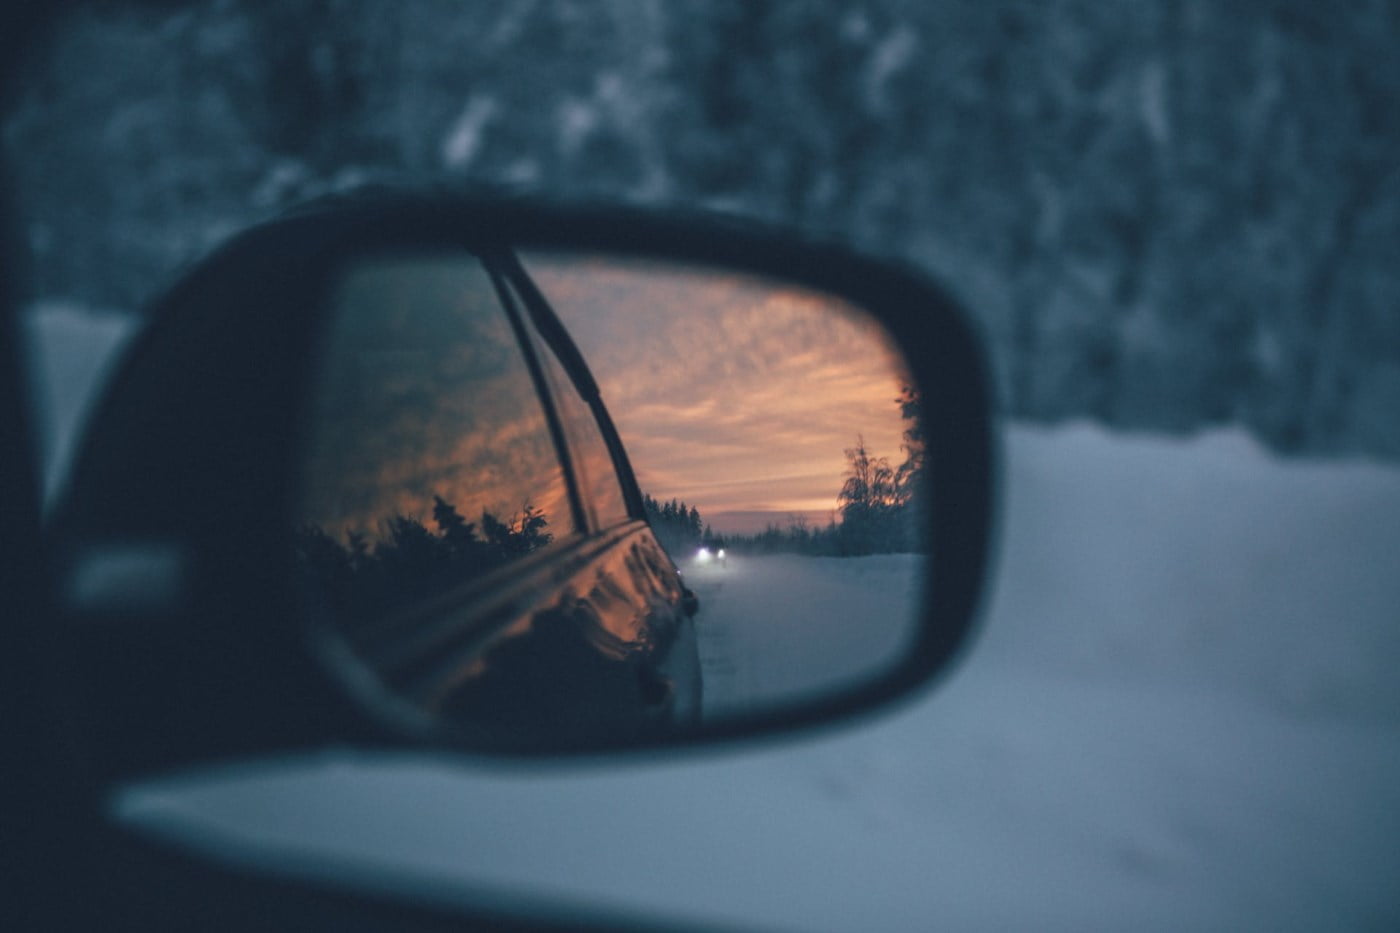 Et bilspeil reflekterer et vinterlandskap